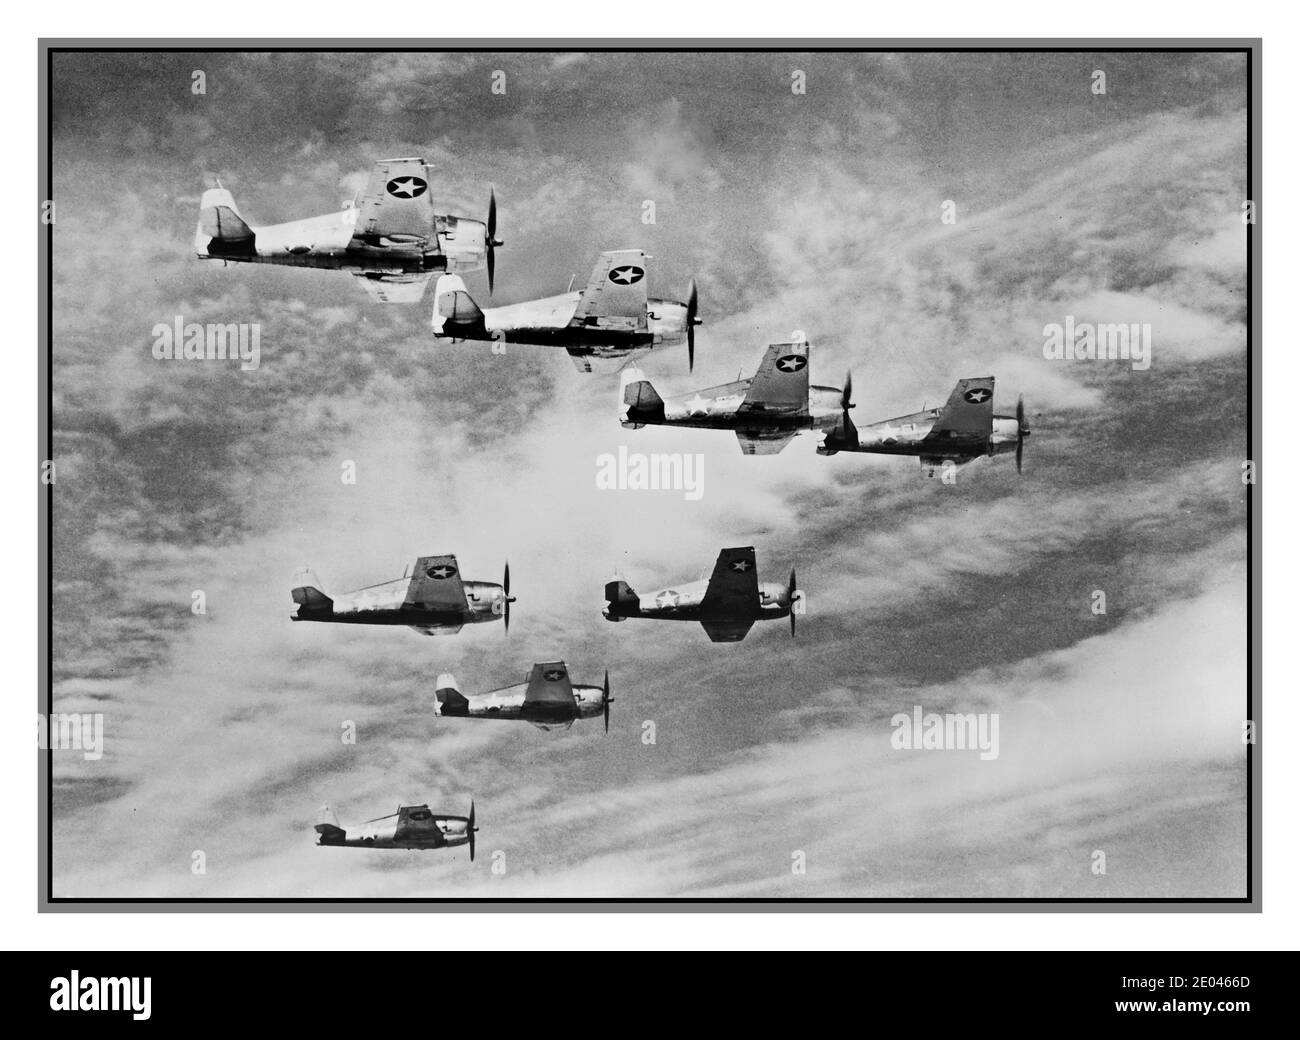 WW2 USA image aérienne de propagande intitulée "quelque chose qui va monter plus vite" vue aérienne de huit avions Grumman Hellcat en vol. 1943. Avions--États-Unis-1940-1950 Guerre mondiale, 1939-1945--matériel et fournitures--photographies aériennes américaines Seconde Guerre mondiale Banque D'Images